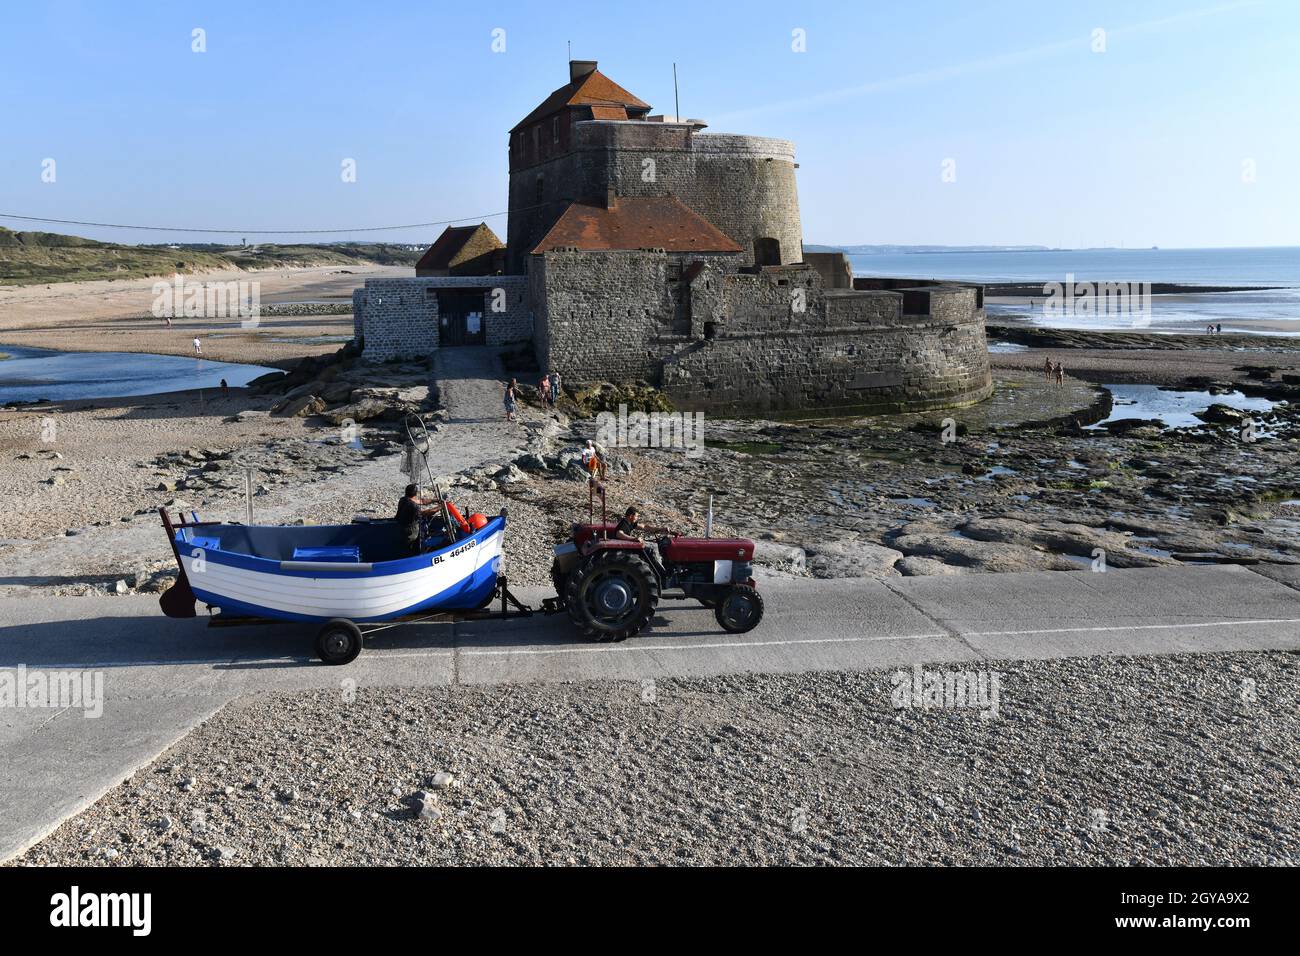 Ambleteuse, Francia settentrionale. Trattore traino barca da pesca Fort d' Ambleteuse chiamato anche Vauban Fort o Fort Mahon situato sulla costa nel Pas-de-C. Foto Stock